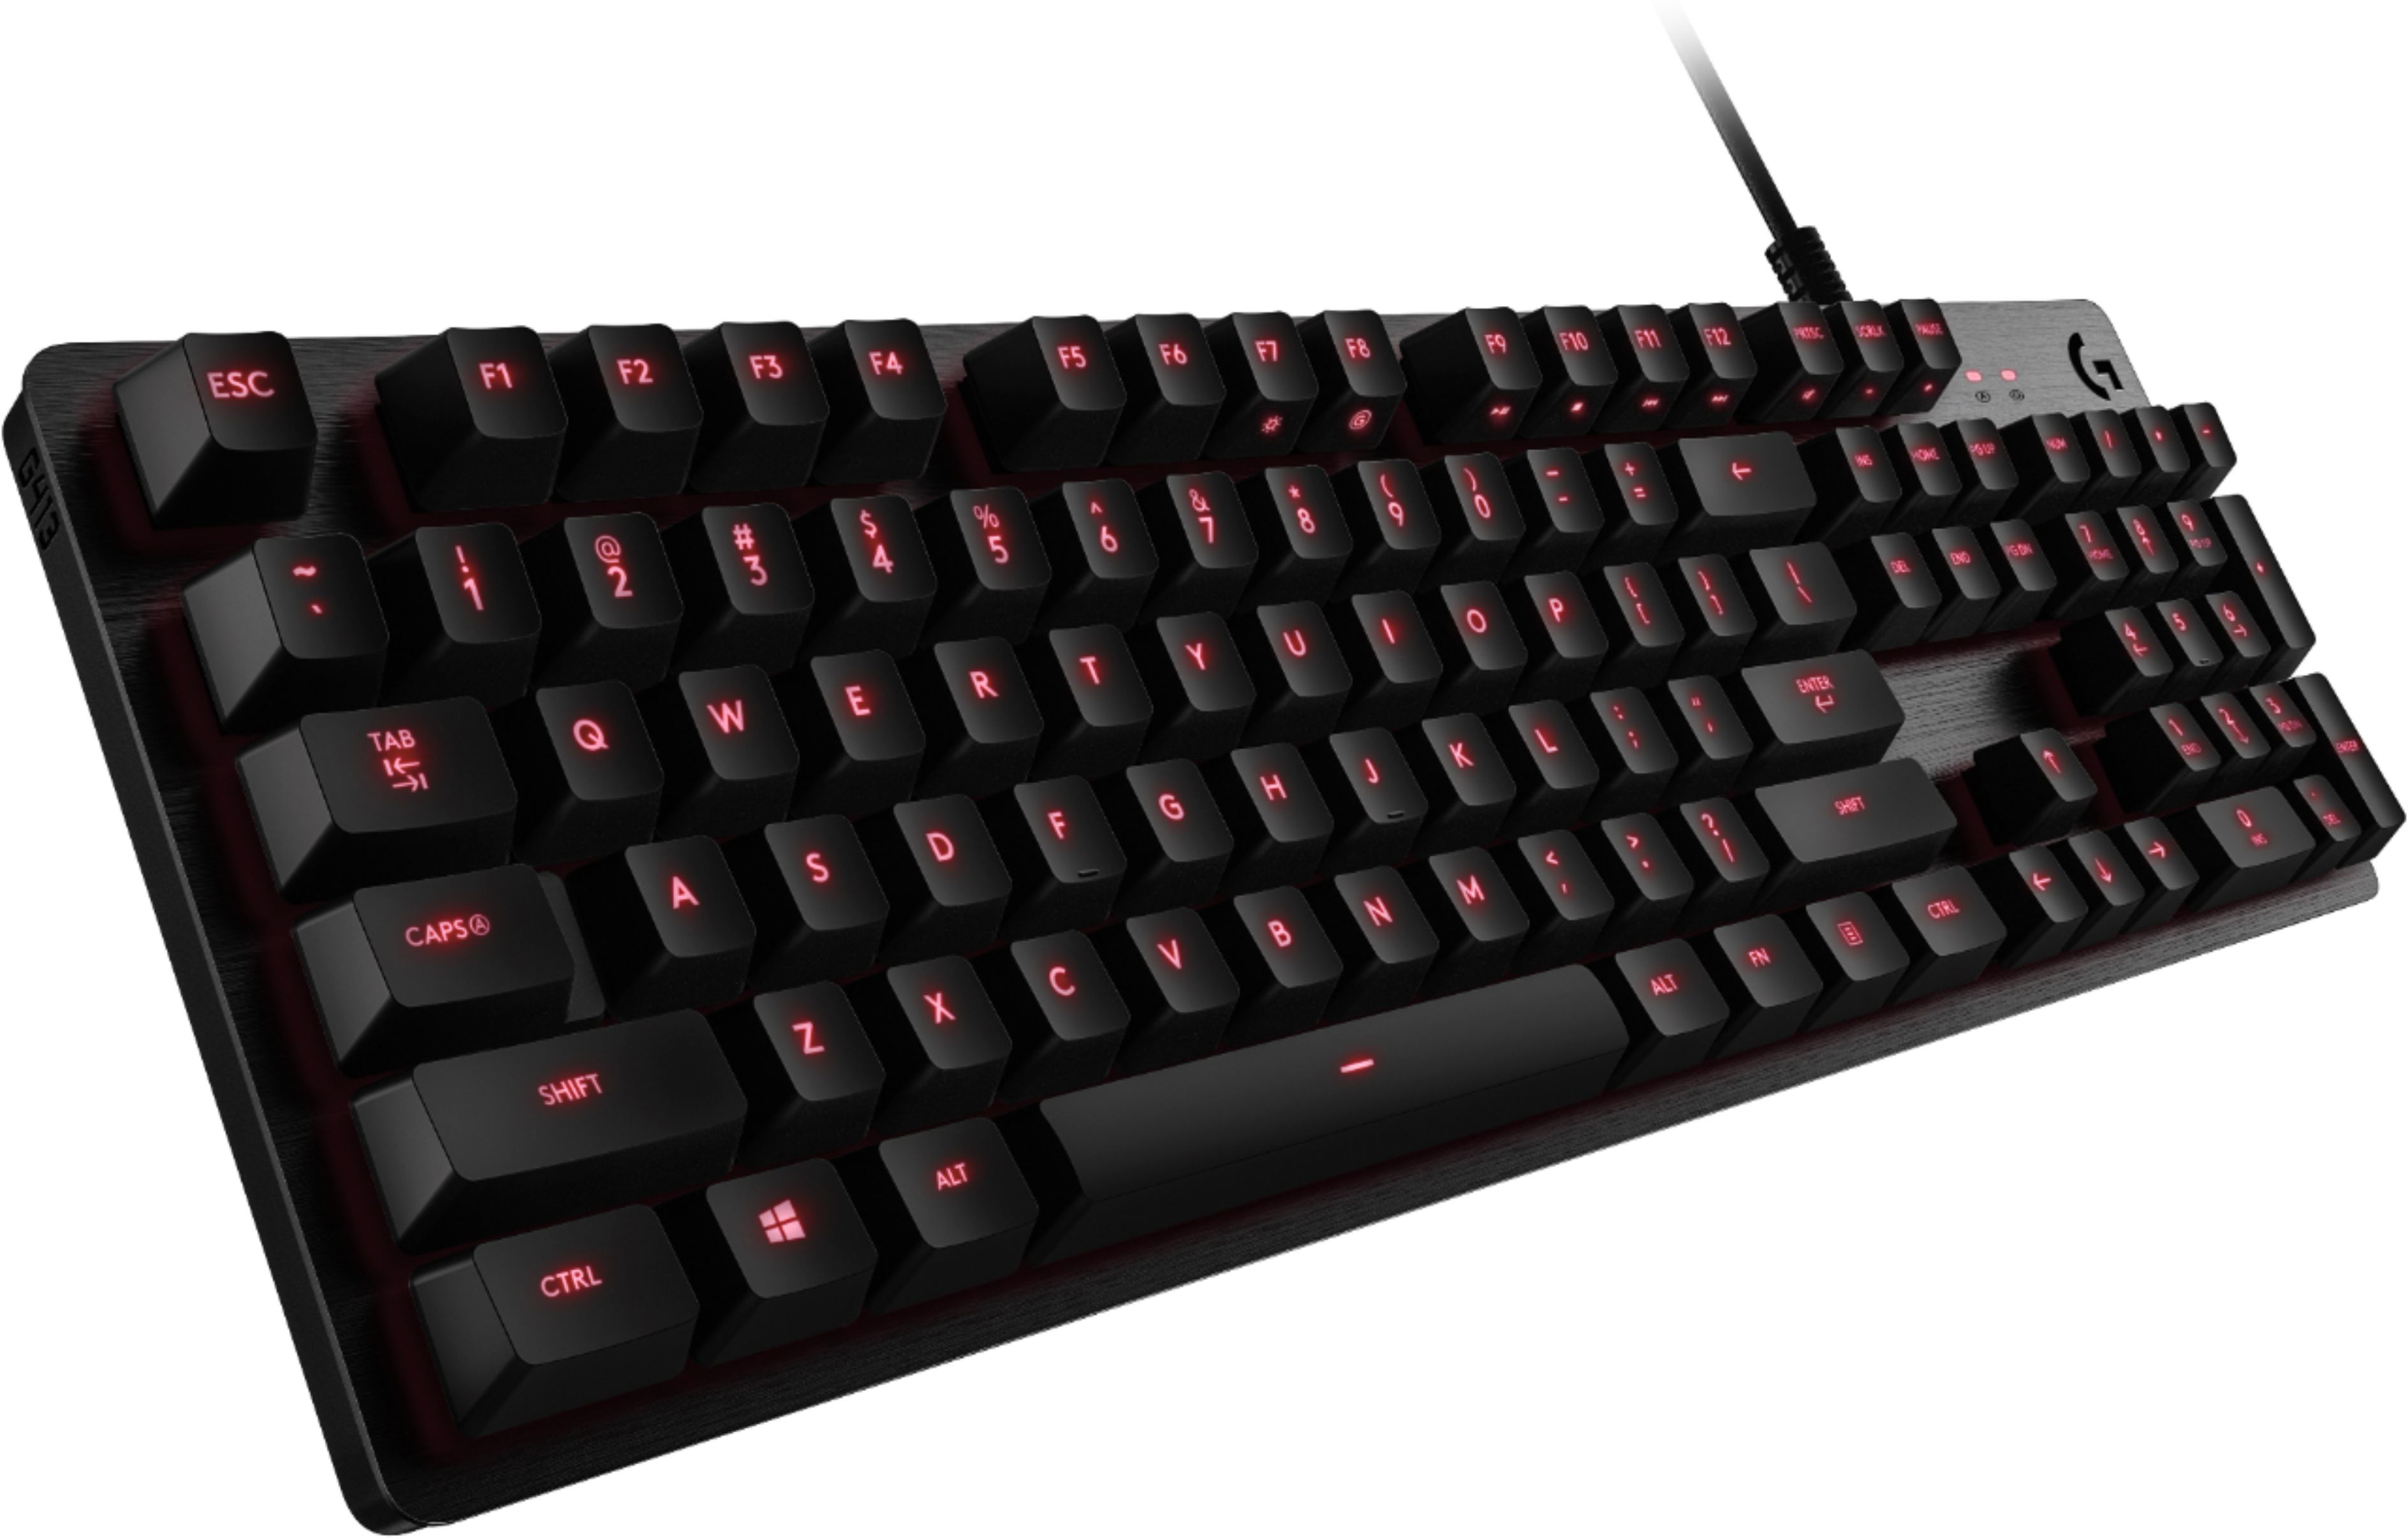 Logitech G413 TKL keyboard review: Don't buy it